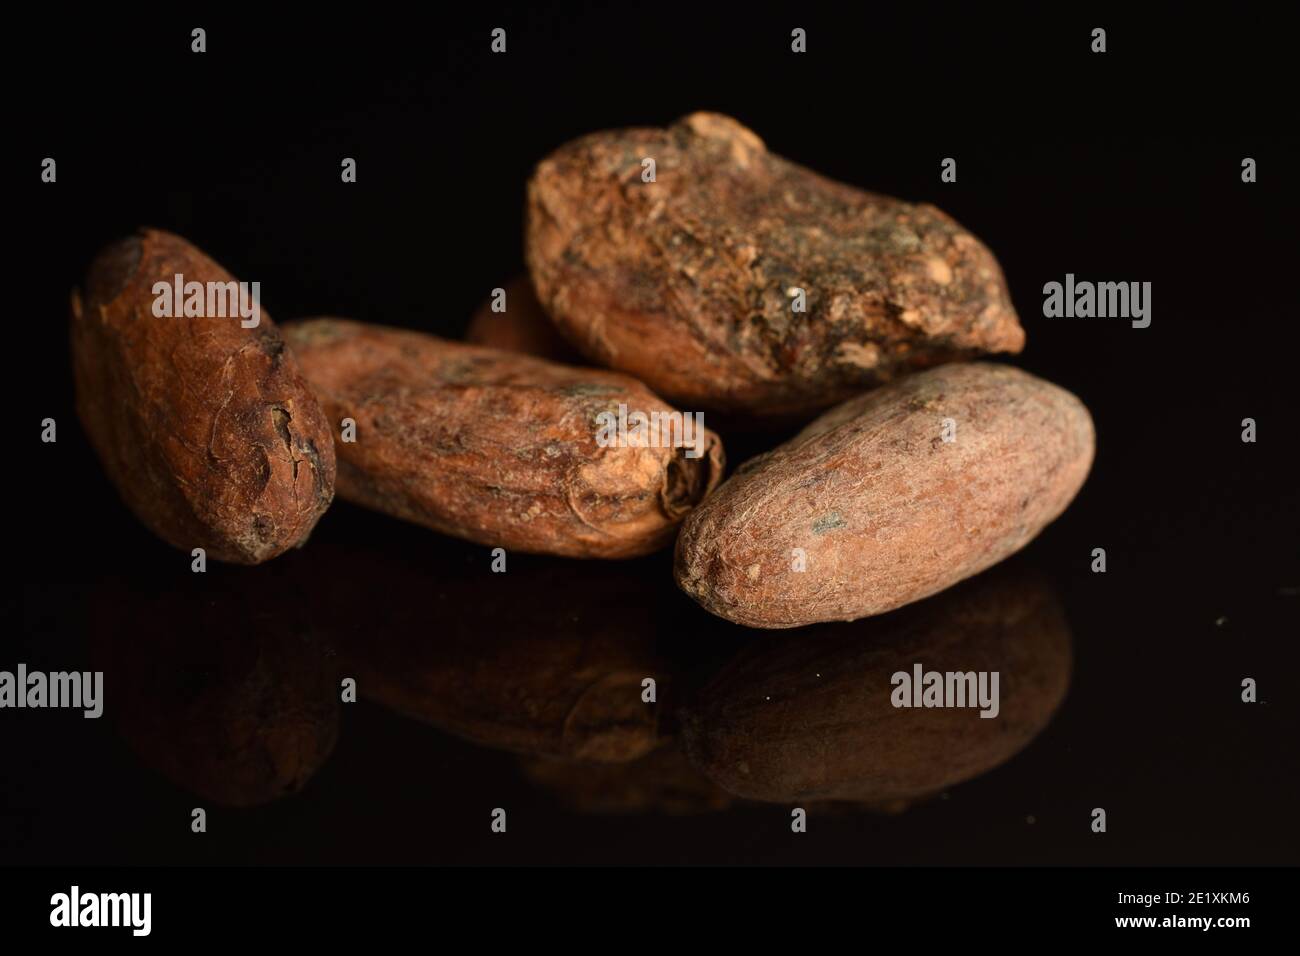 Quatre grains de cacao entiers frits et biologiques bruns sur un arrière-plan noir Banque D'Images